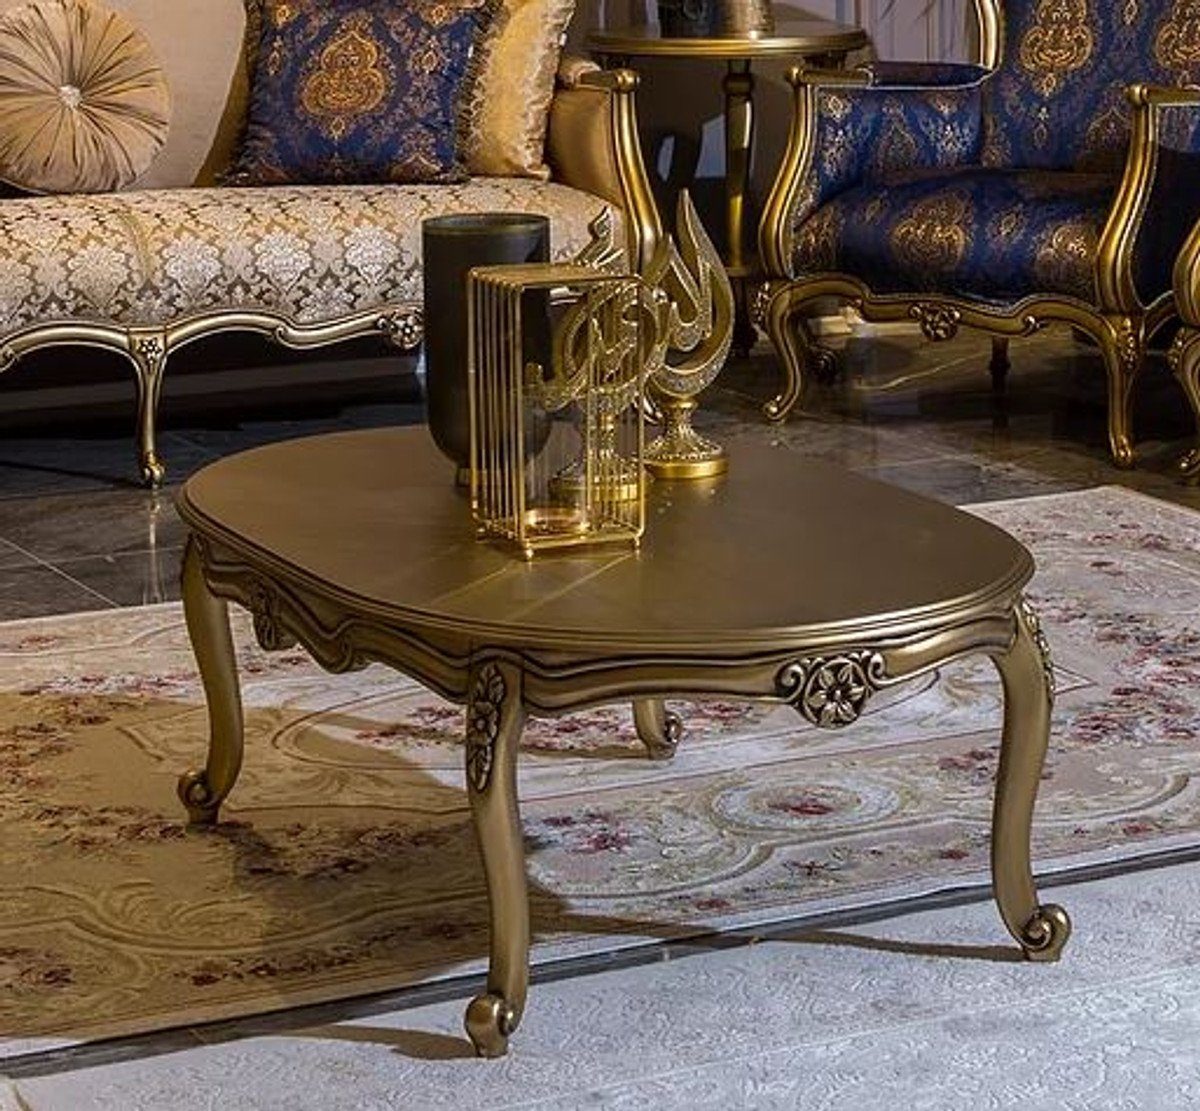 Casa Padrino Couchtisch Luxus Barock Couchtisch Gold 129 x 81 x H. 45 cm - Ovaler Massivholz Wohnzimmertisch - Barockstil Möbel